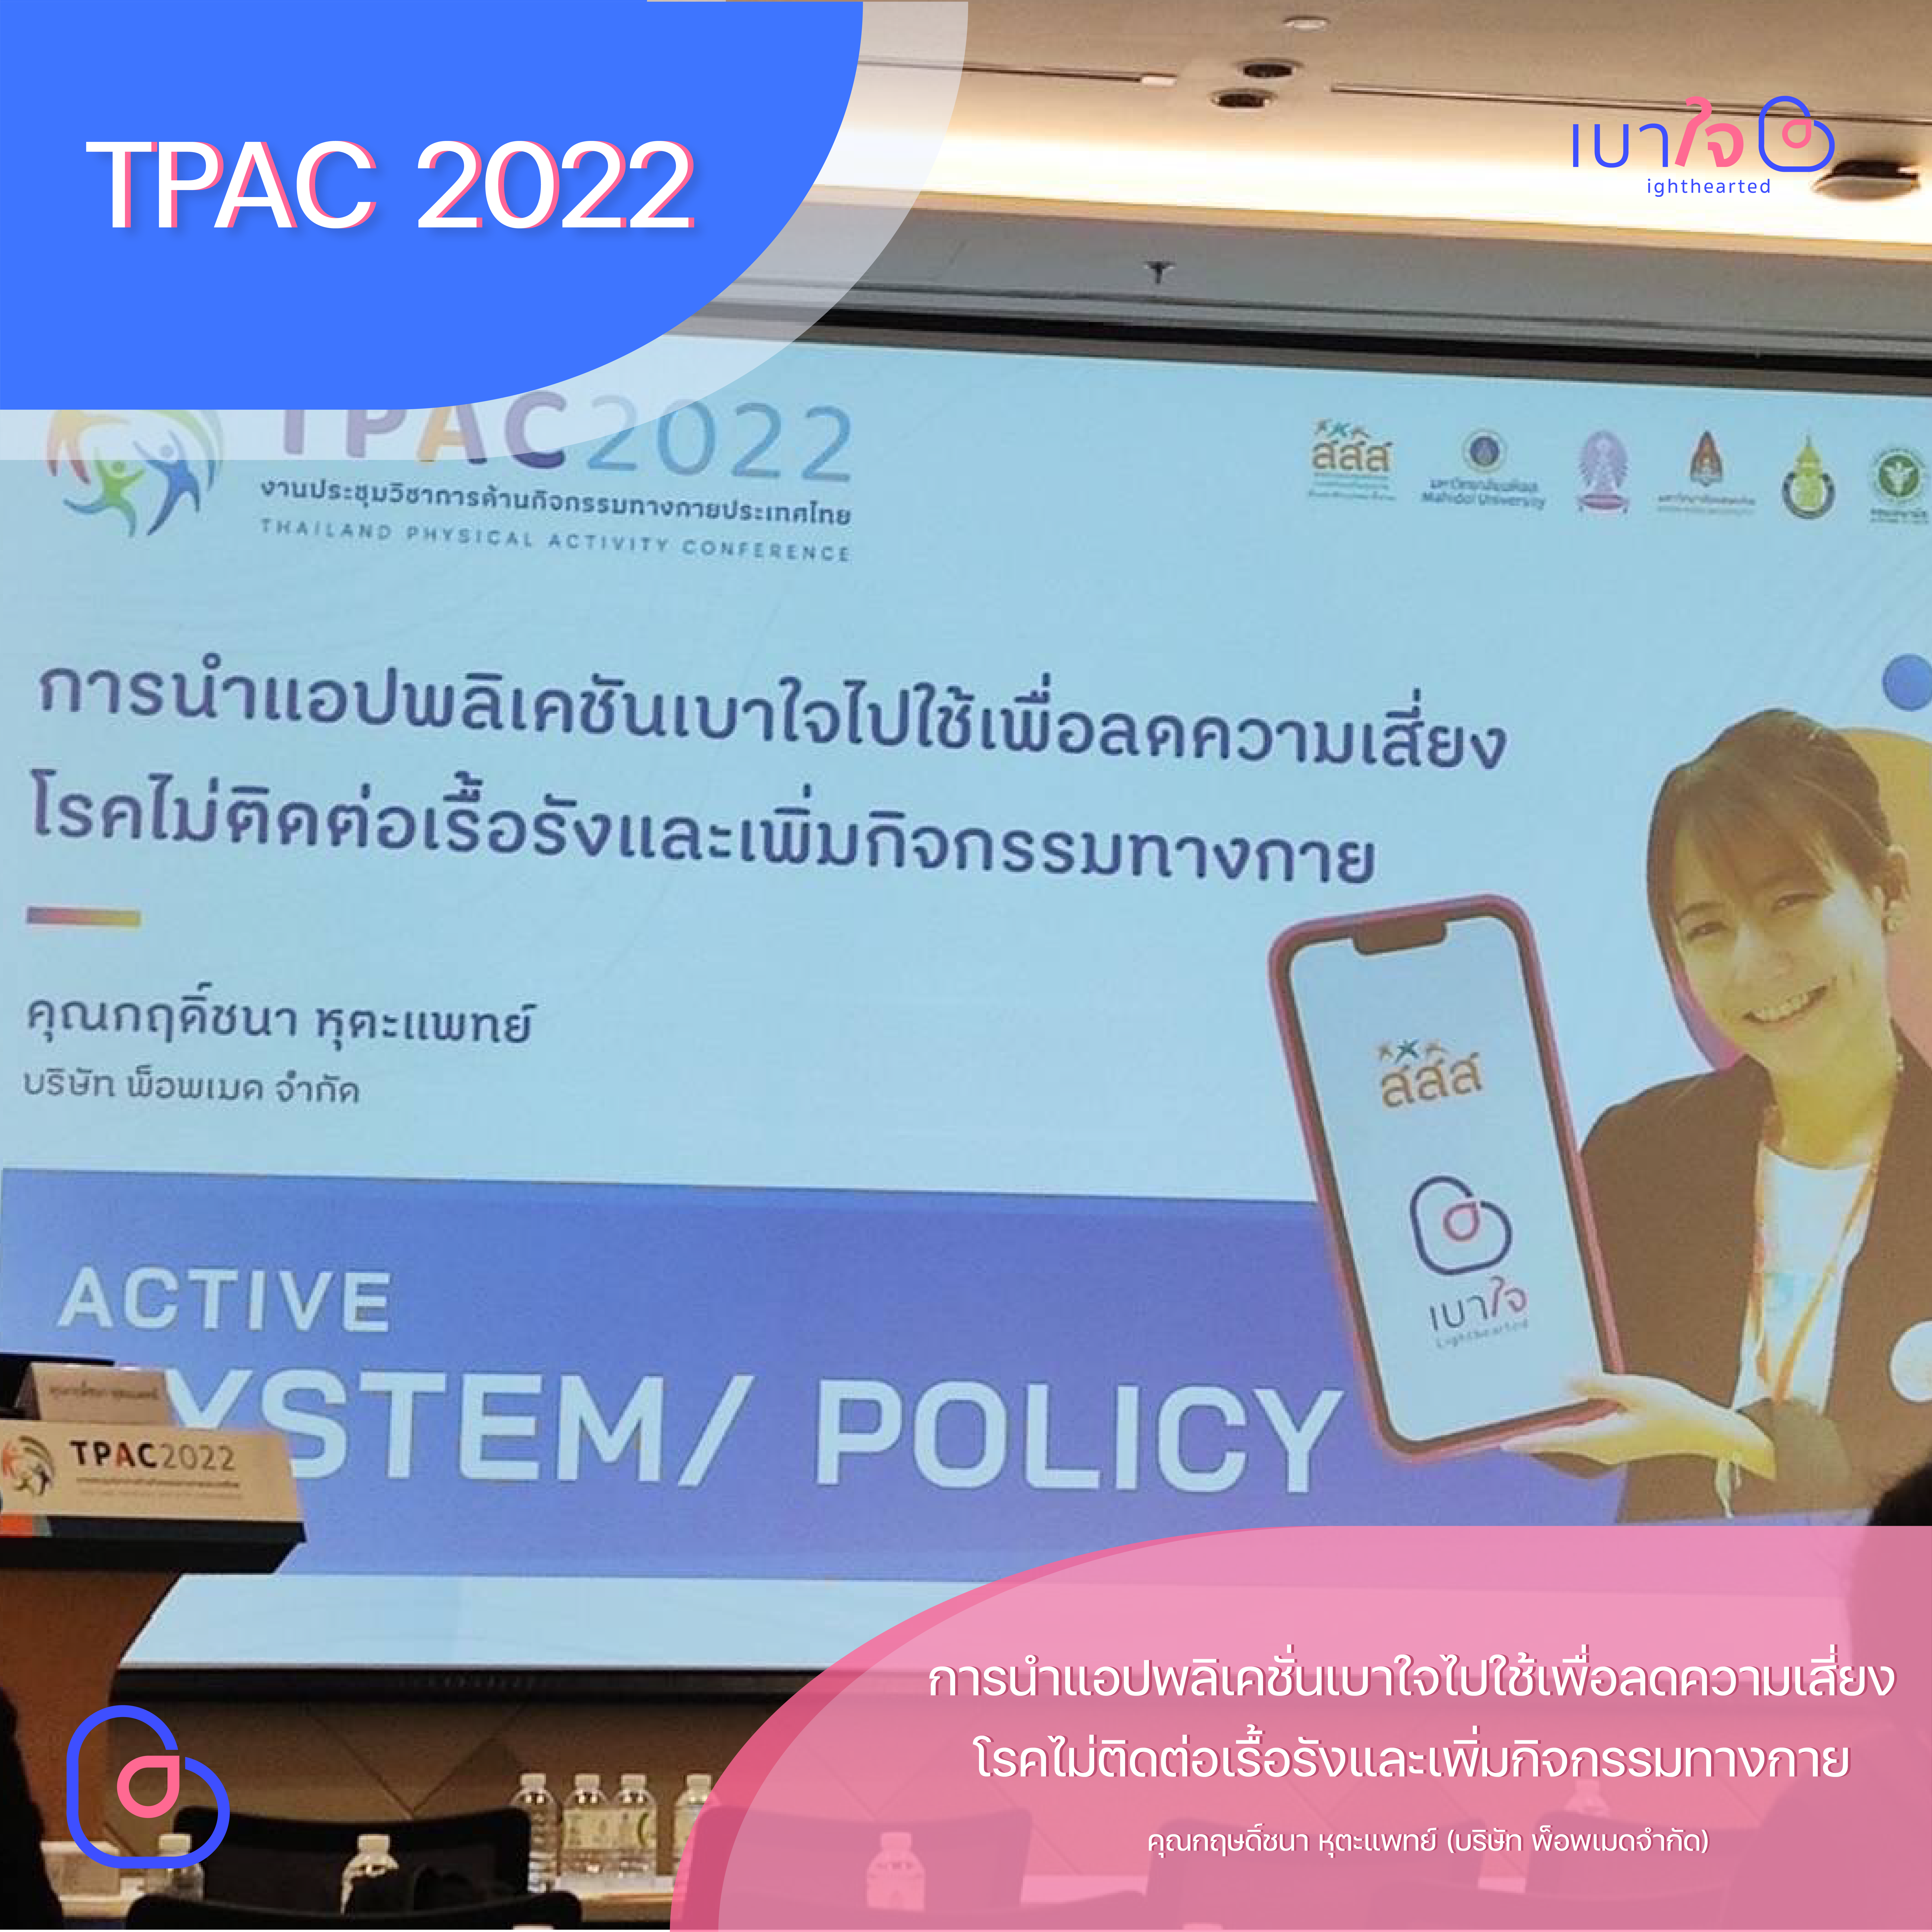 เบาใจ นำเสนอบนเวทีงาน Thailand Physical Activity 2023 